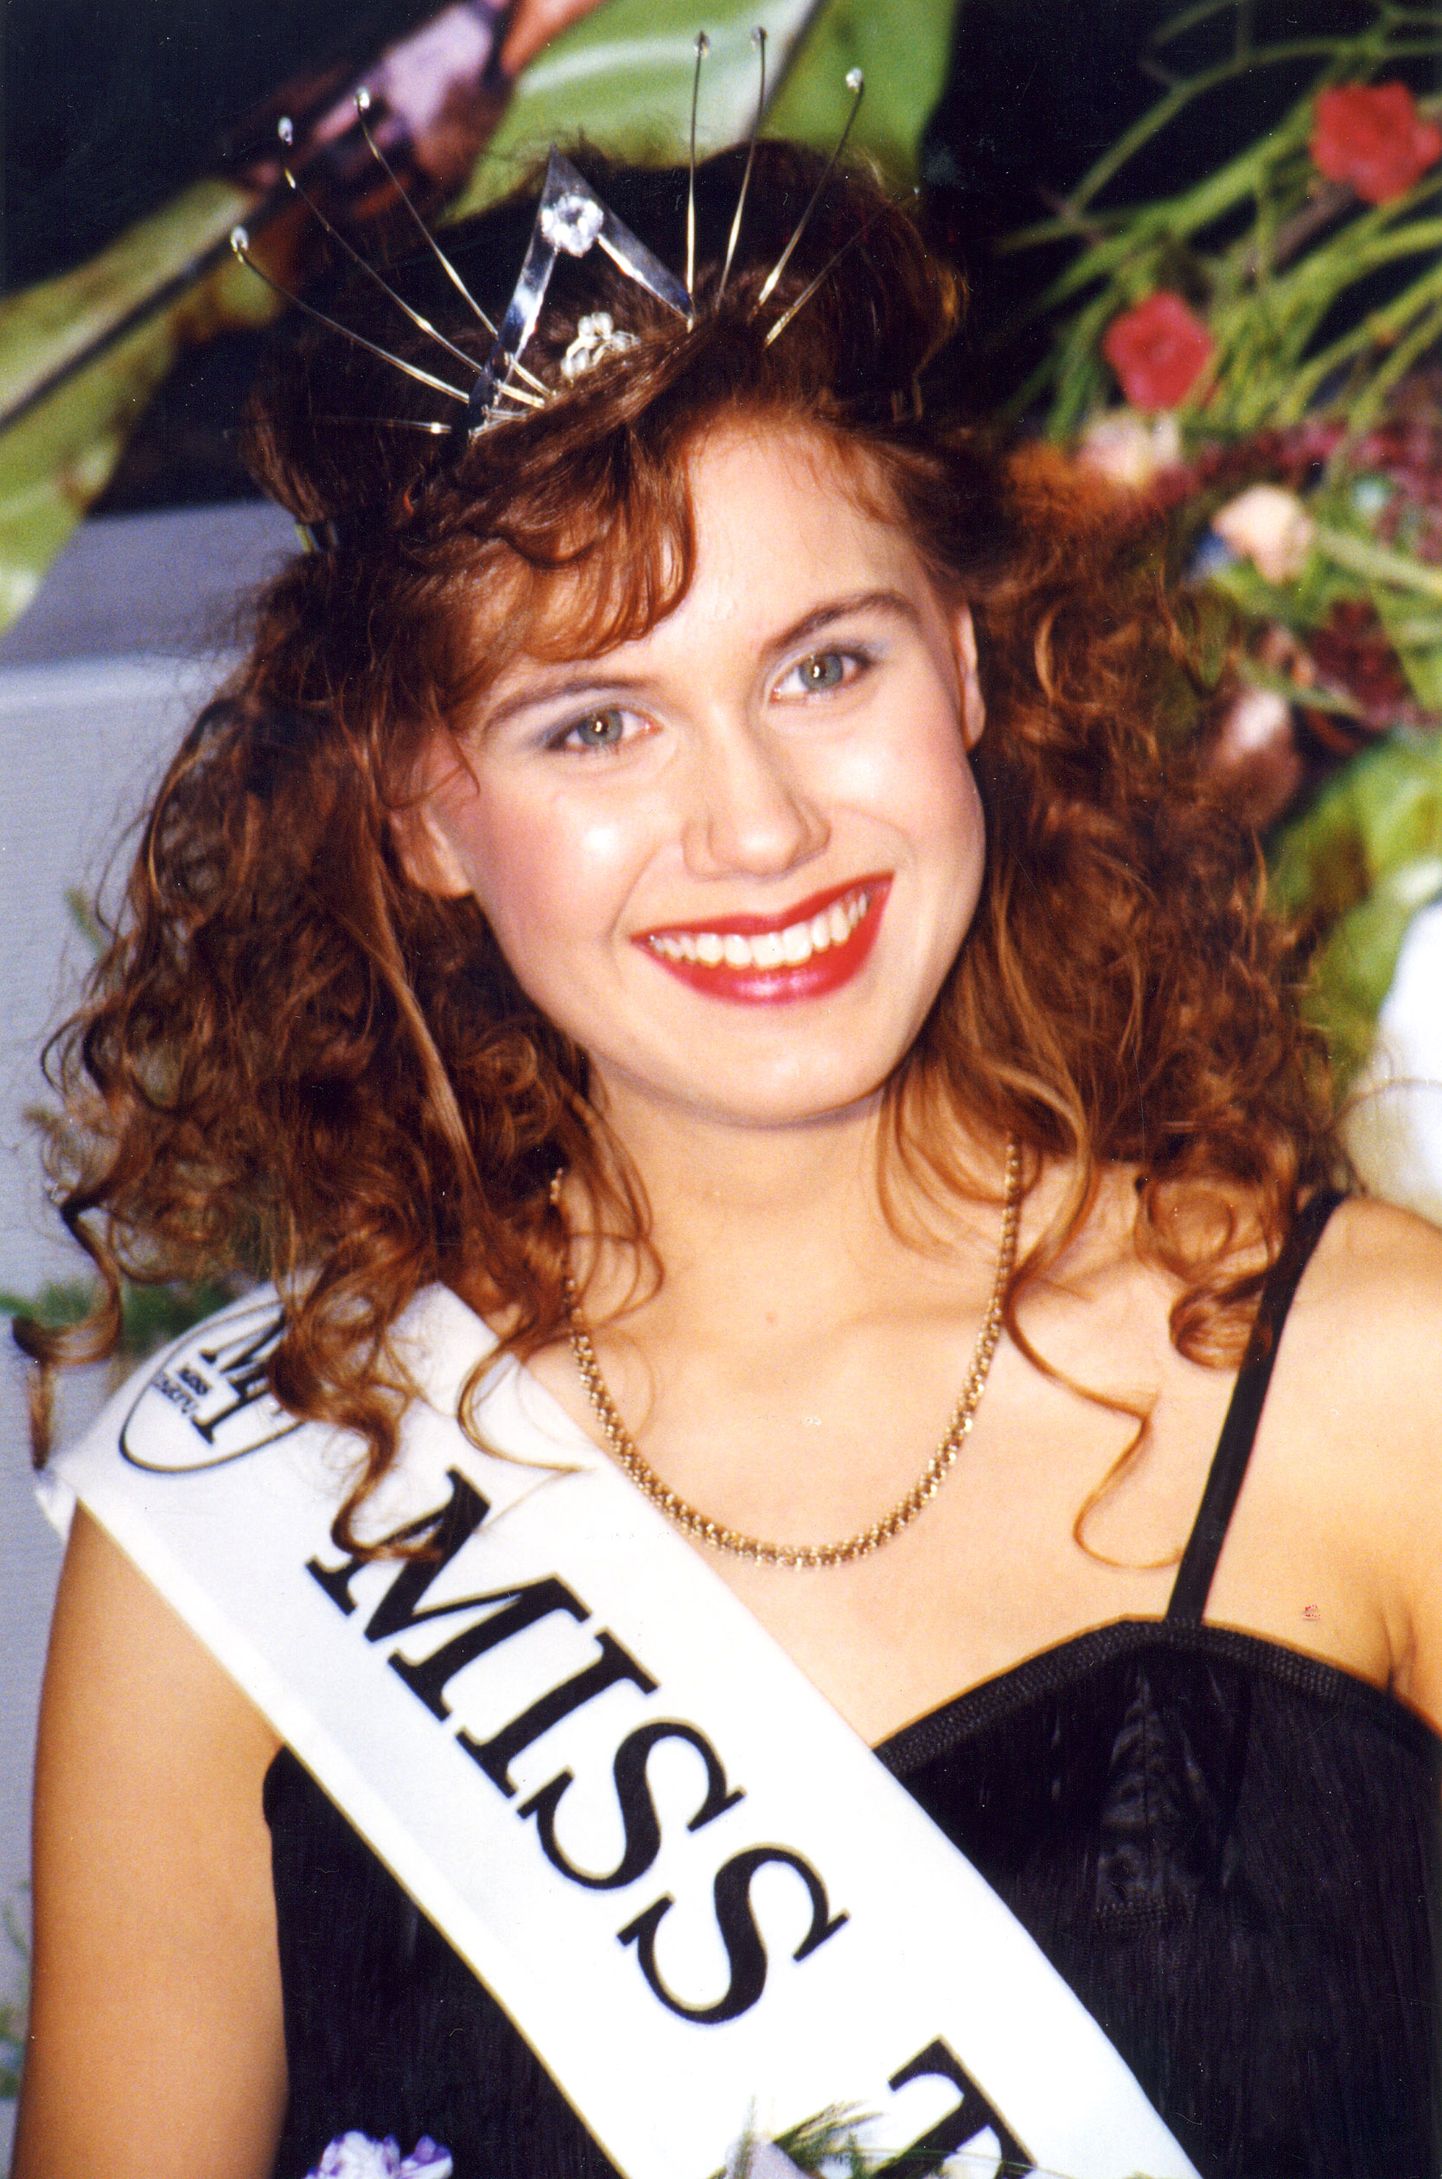 Miss Tartu '95. Pildil Miss Tartu '95 Kadri Must. 12. detsember 1994.
Foto digitaliseeritud 13. oktoobril 2009.
Foto: Ain Protsin/Postimees.